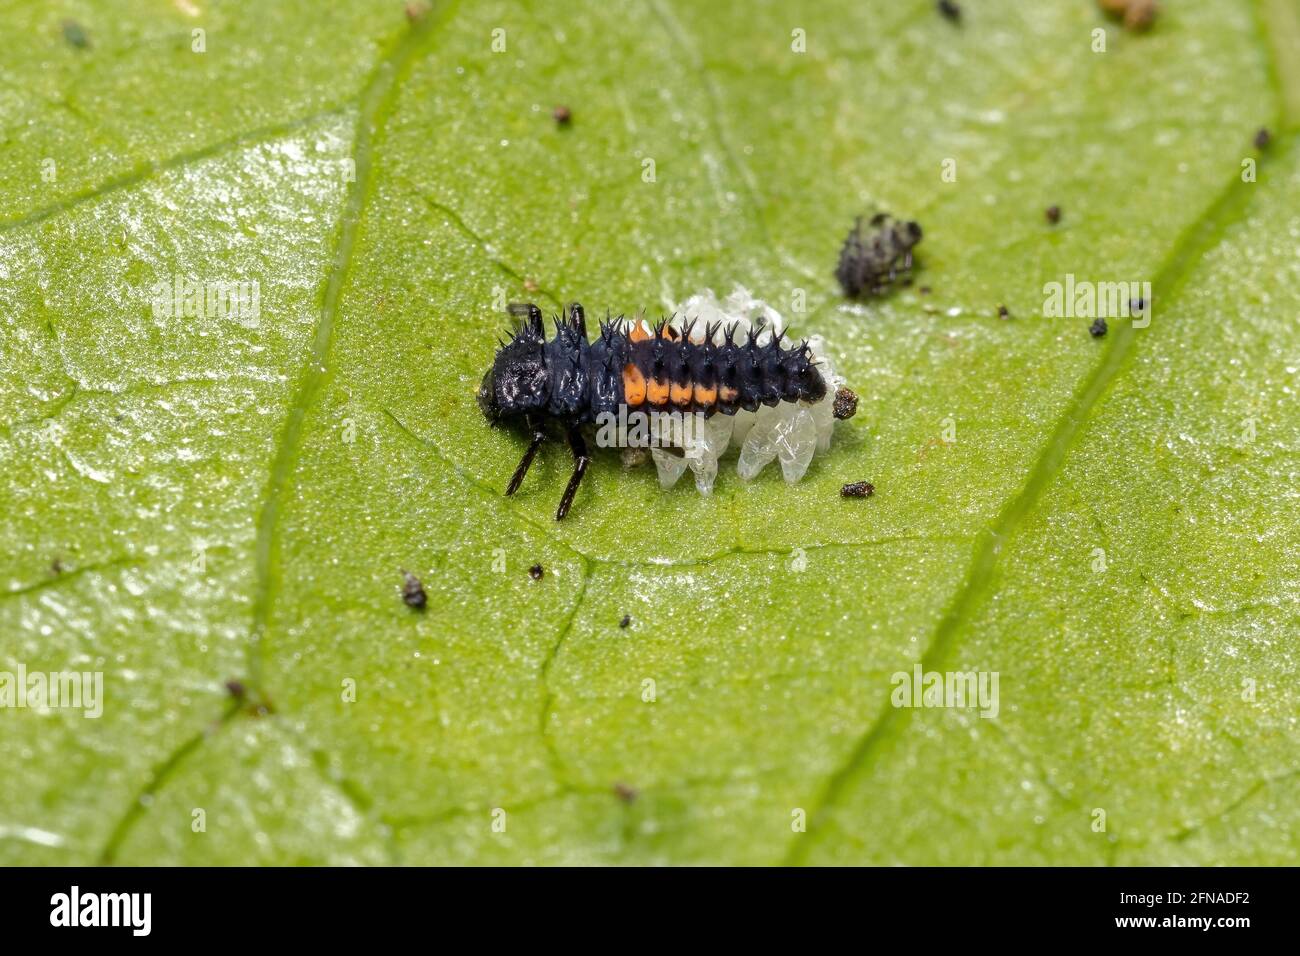 Asiatische Lady Beetle Larven der Art Harmonia axyridis fressen Blattläuse auf einer Hibiskuspflanze Stockfoto